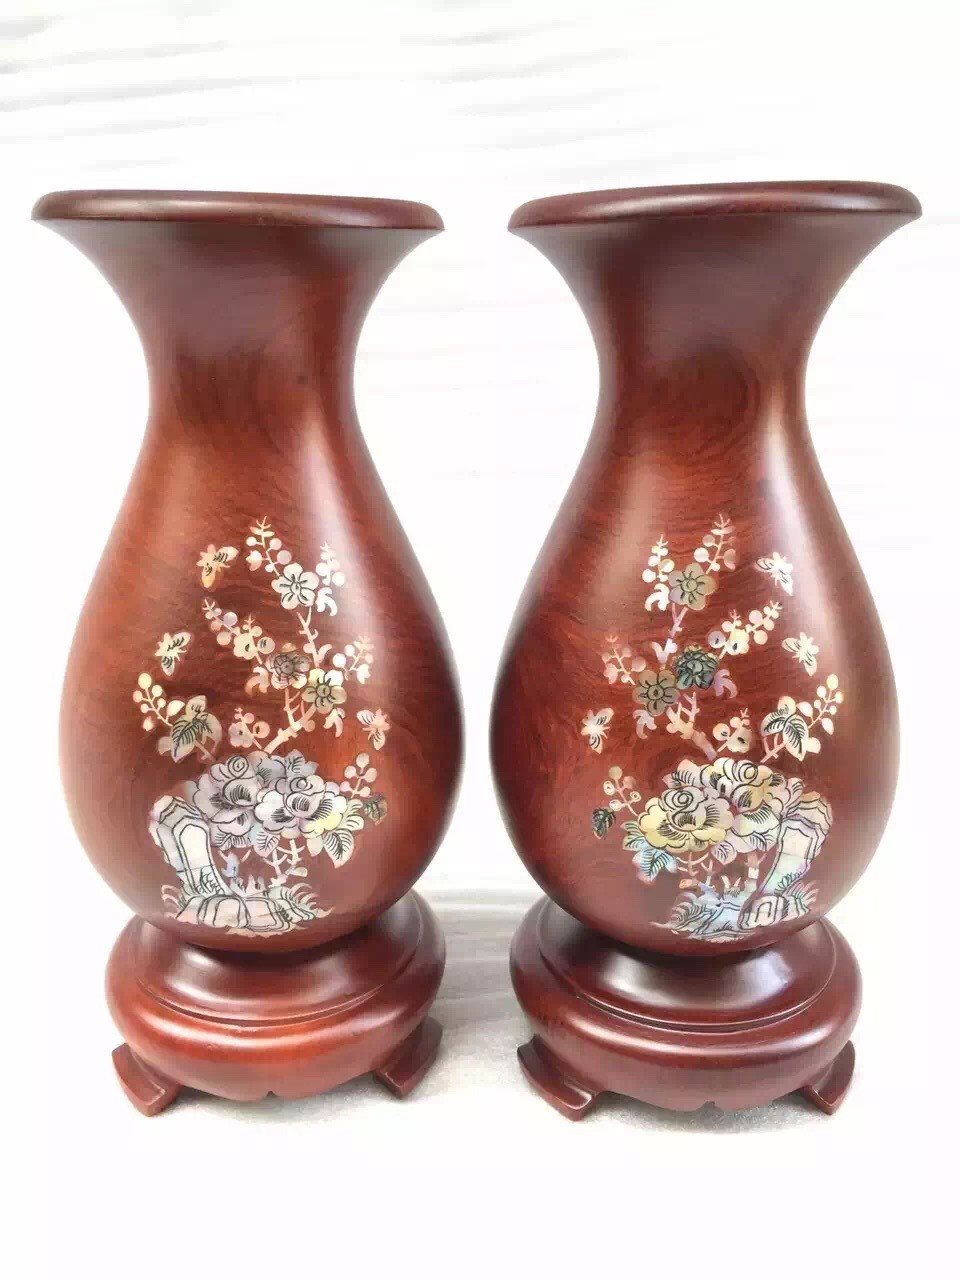 木质花纹图案花瓶摆件型 木雕雕刻工艺品 木制工艺摆件